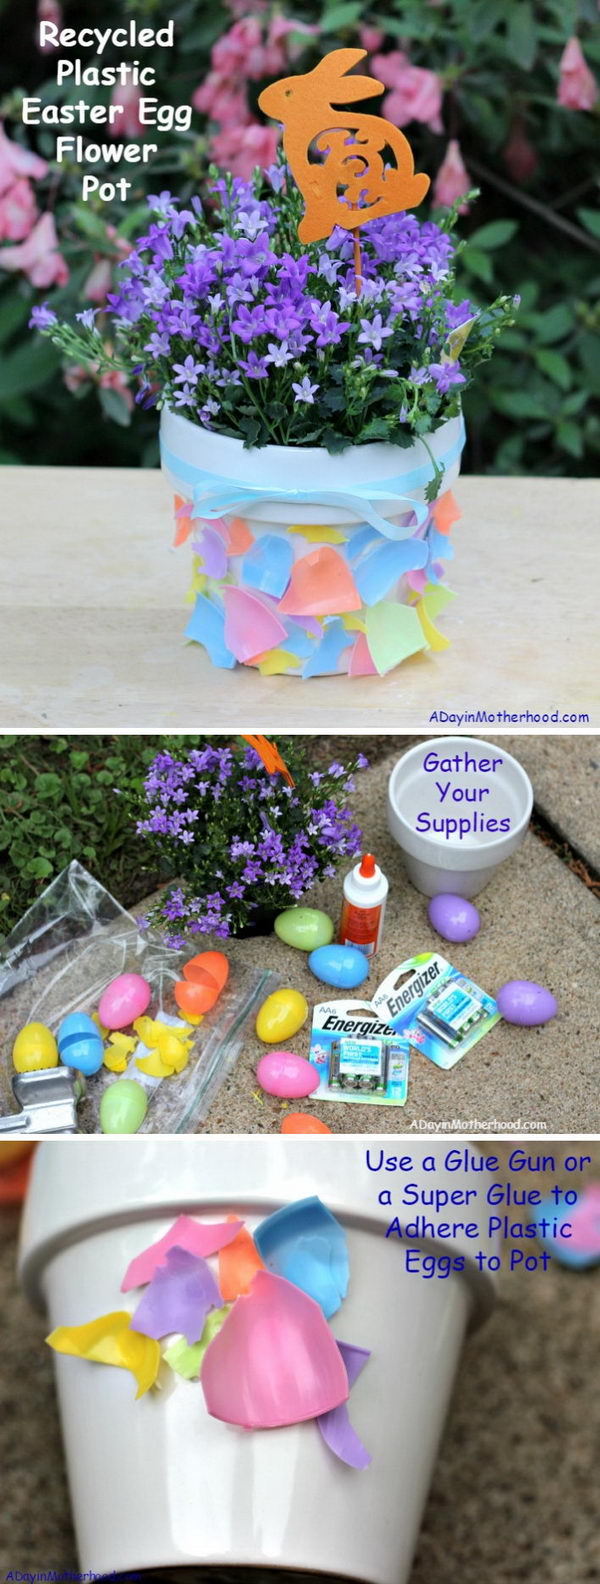 Recycled Plastic Easter Egg Flower Pot. 